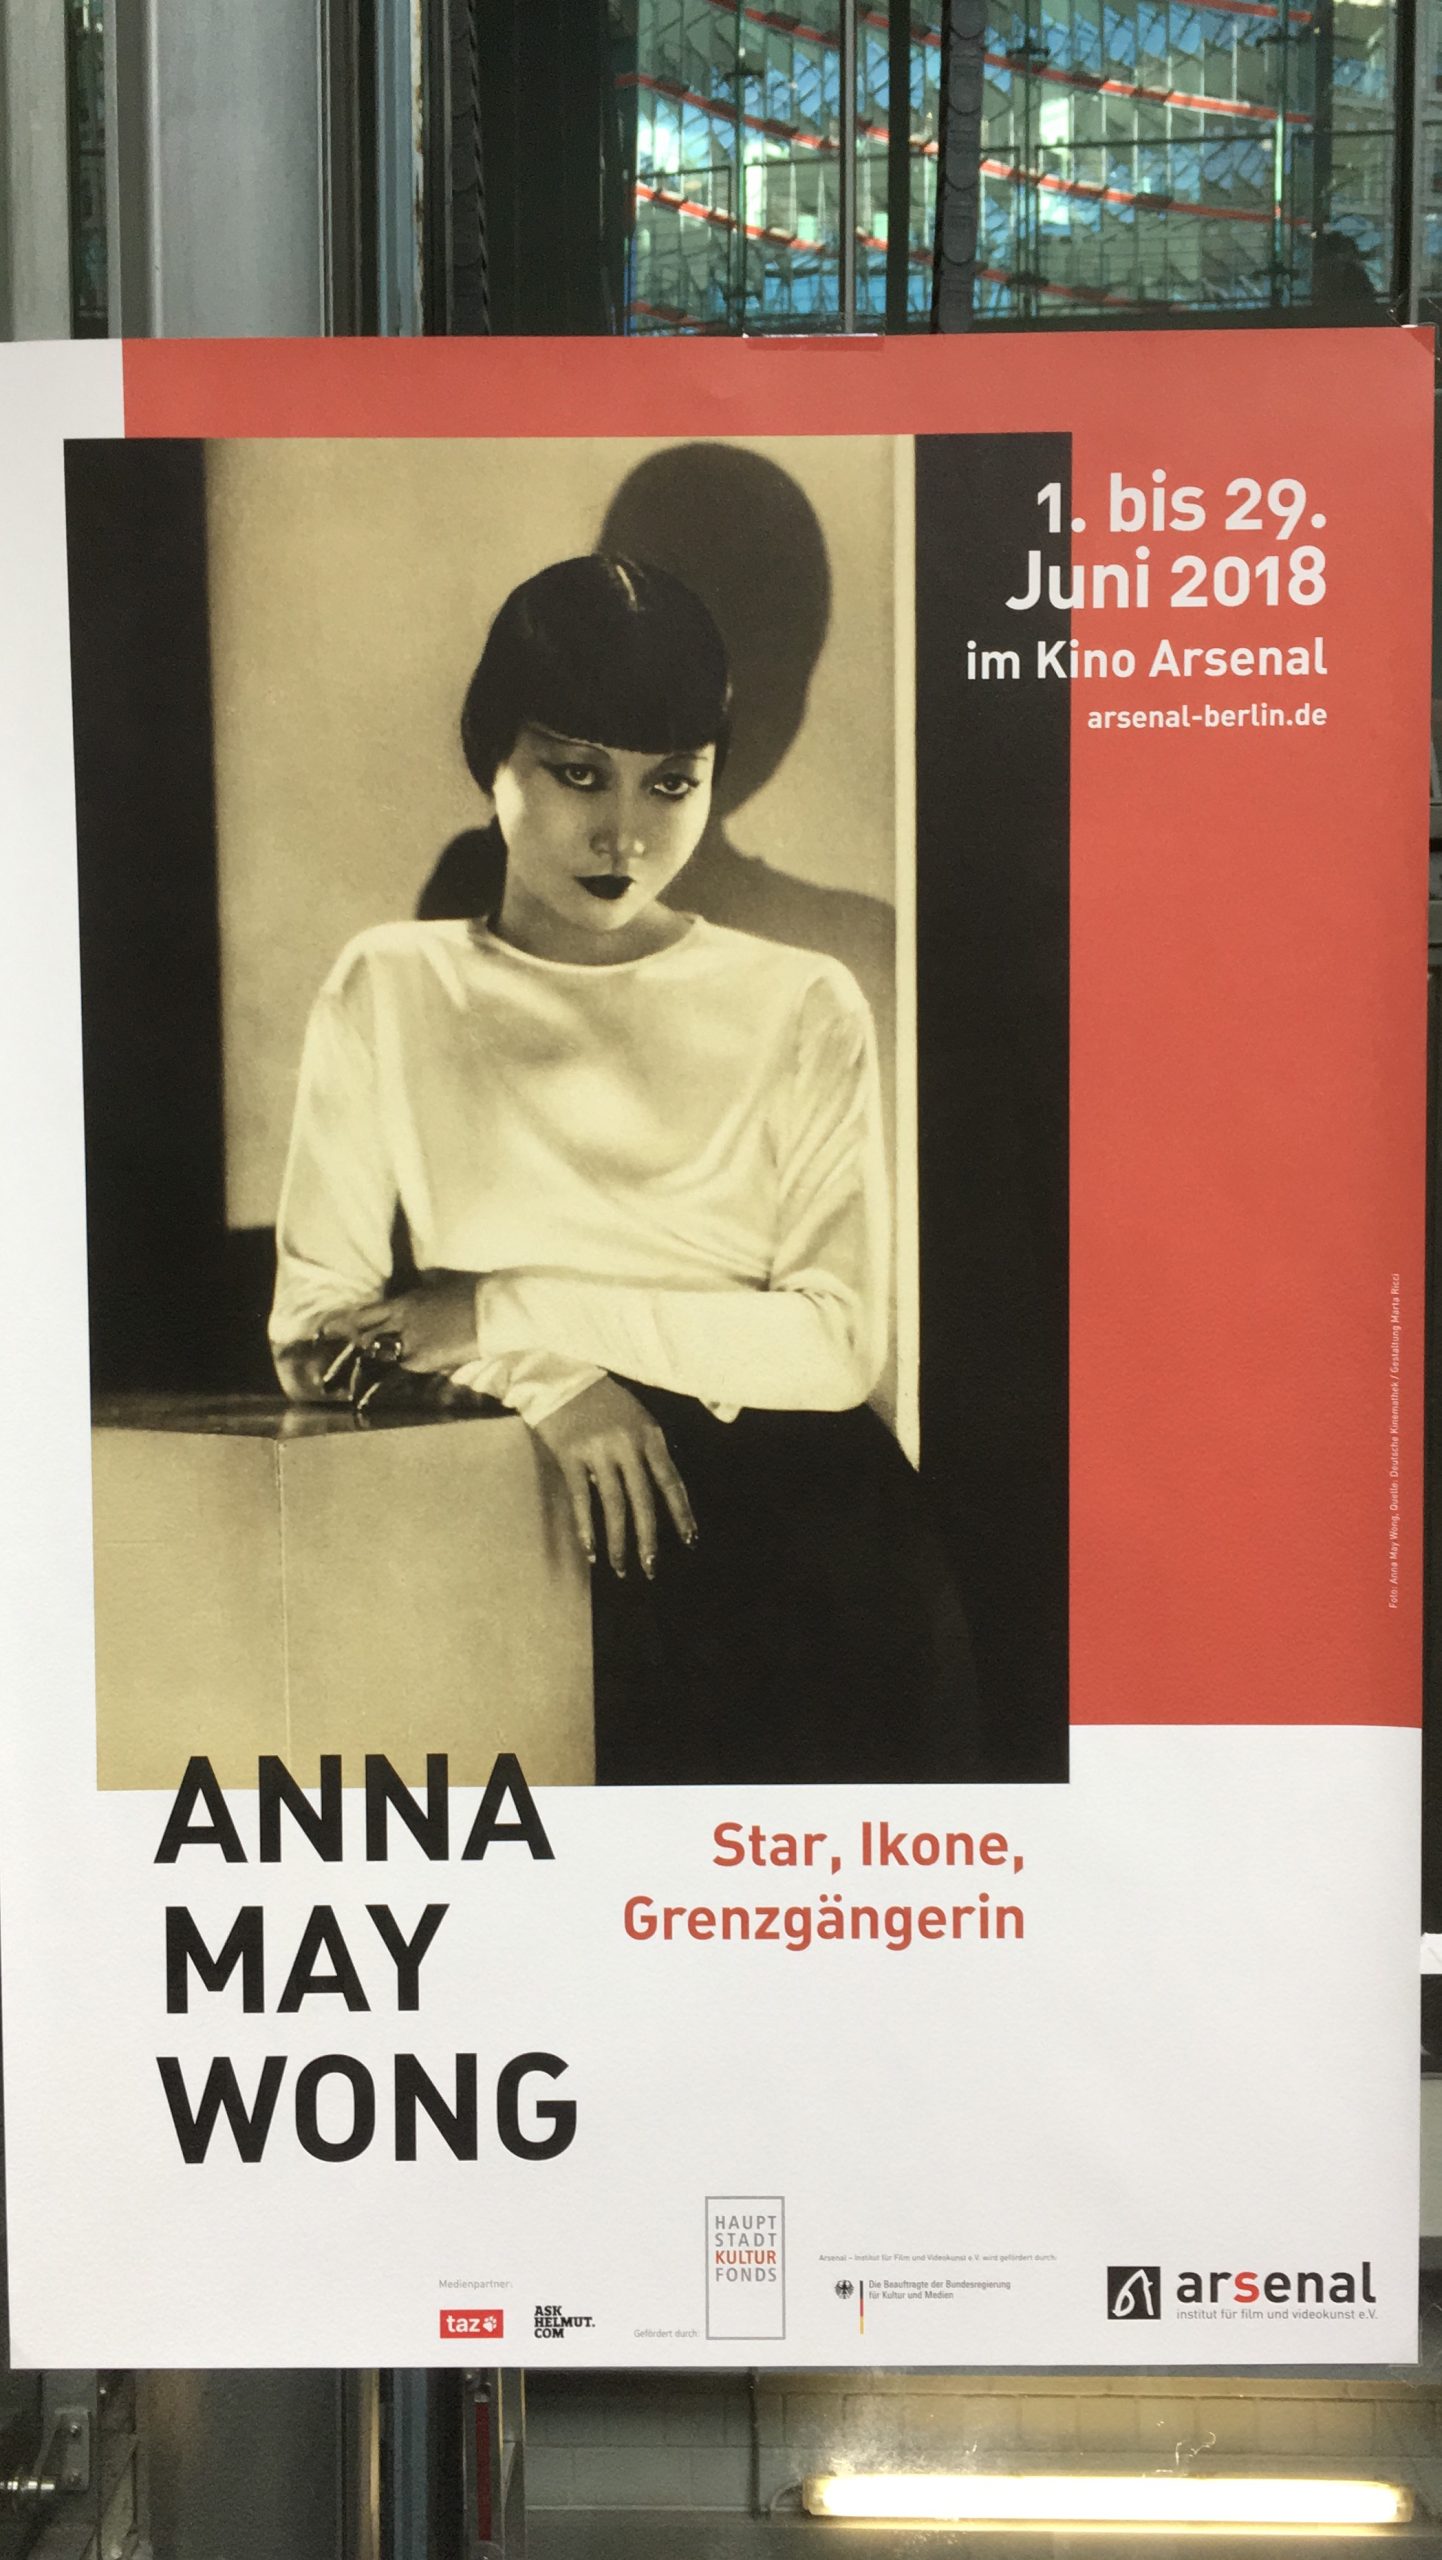 Eine schwarz, rot-weiße Fimpostkarte. Ein schwarz-weiß Bild von Anna May Wong ist zu sehen. Die Überschrift sagt “Anna May Wong, Star, Ikone Grenzgängerin”. Rechts oben steht “01. bis 29. Juni 2018 im Kino Arsenal”.